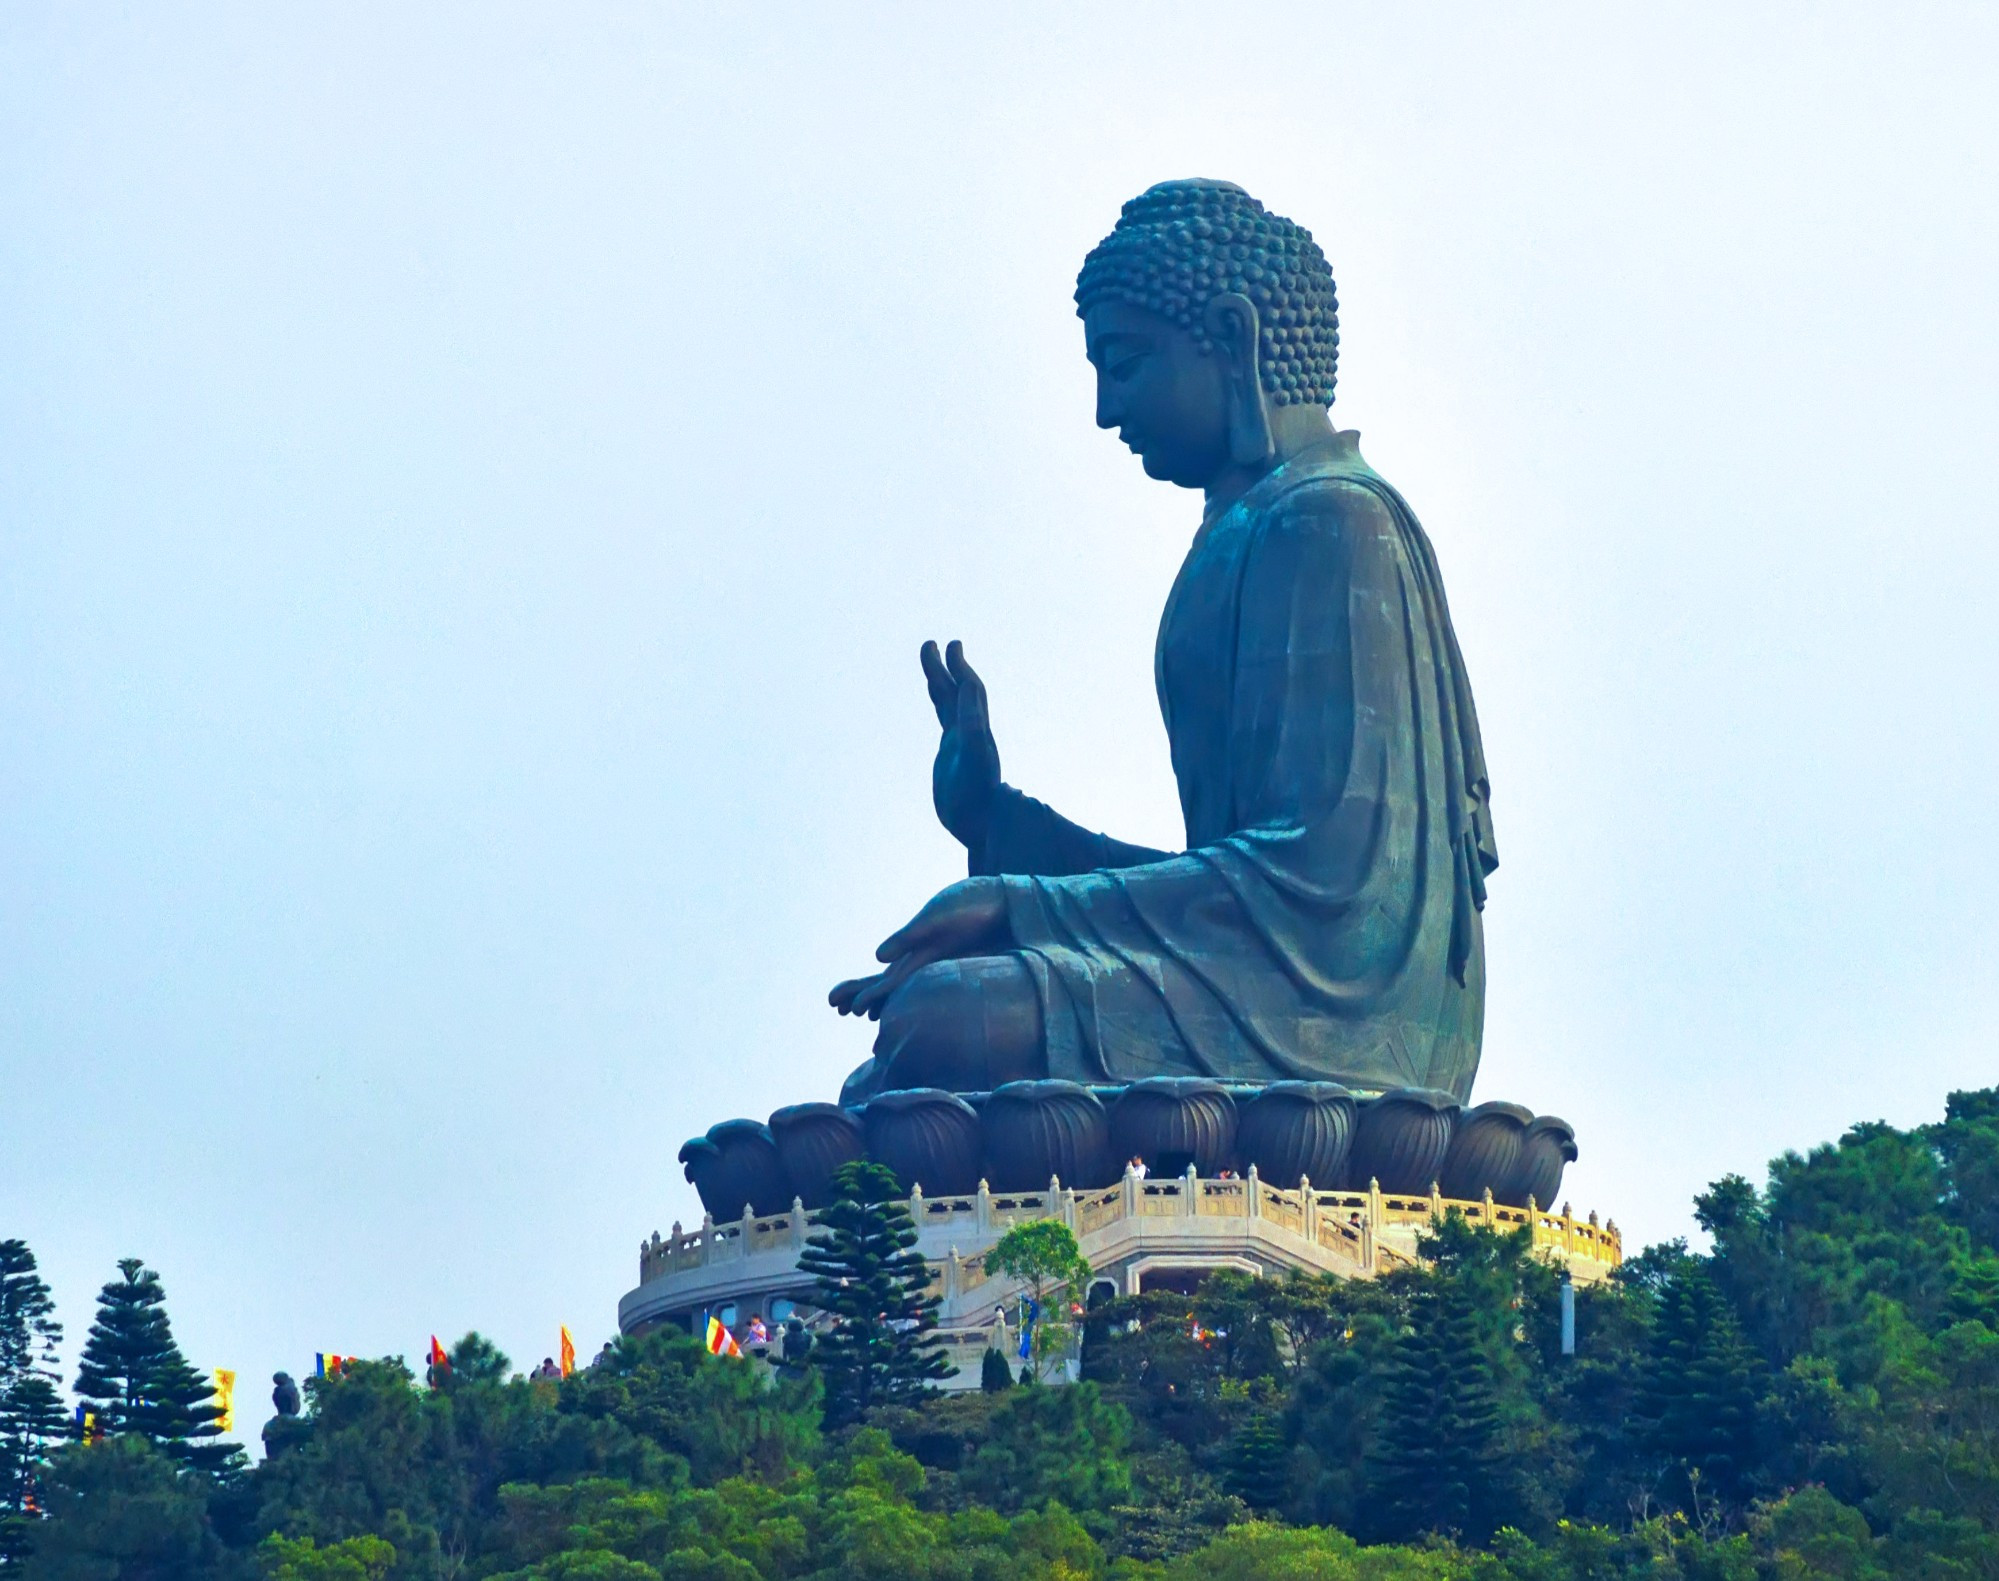 Большой Будда – это огромная статуя Будды Шакъямуни, которая находится в Гонконге на возвышенности Нгонпхин острова Лантау рядом с монастырём Поулиньсим. Настоящее (кантонское) название этой статуи переводится как «Большой Будда неба» или «Большой Будда Тхиньтхаань». Статуя символизирует гармоничные отношения между человеком и природой, человеком и религией.<br/>
Задумывалась эта статуя в 1976 году, но возведением её Авиационный департамент Китая занялся лишь в 1990 году. Открытие, в котором принимали участие буддисты из материкового Китая, Гонконга, Тайваня, Индии, Японии, Кореи, Таиланда, Малайзии, Сингапура, Шри-Ланки и США, состоялось 29 декабря 1993 года.<br/>
Большой Будда держится на стальном каркасе, покрытом 202 отдельными бронзовыми частями. Лицо дополнительно покрыто тонким слоем золота. Он сидит на трехъярусном основании в виде лотоса, скопированном с храма Неба в Пекине. Эта статуя Будды является одной из пяти самых больших в своём роде в Китае и самой большой в мире бронзовой статуей сидящего Будды под открытым небом. Высота статуи составляет 34 метра (высота горы Мукъю под ней – 482 м), вес – более 250 тонн, а весь комплекс занимает 6547 кв.м. Чтобы подняться к статуе, нужно преодолеть 268 ступеней (для инвалидов-колясочников есть отдельная дорожка).<br/>
Будда Тхиньтхаань сидит в позе медитации. Его правая рука поднята в мудре Абхая (рассеивает страх, обеспечивает защиту). Колесо Дхармы, начертанное на этой ладони, символизирует движение и прогресс. Его левая рука спокойно лежит на ноге, и её пальцы соединены в мудру Кубера (исполняет желания). Интересно, что эта статуя стоит лицом к северу, то есть как бы благословляет непосредственно Гонконг и материковый Китай; тогда как все остальные статуи Будд по всему миру развёрнуты лицом к югу.<br/>
На пьедестале-лотосе перед Буддой находятся шесть небольших бронзовых статуй бодхисатв, известные, как «шесть дэв-дарителей». Они преподносят Будде цветы, благовония, лампу, мазь, фрукты и музыку (в виде музыкального инструмента). Эти подношения символизируют благотворительность, мораль, терпение, усердие, медитацию и мудрость – всё то, что необходимо для достижения нирваны.